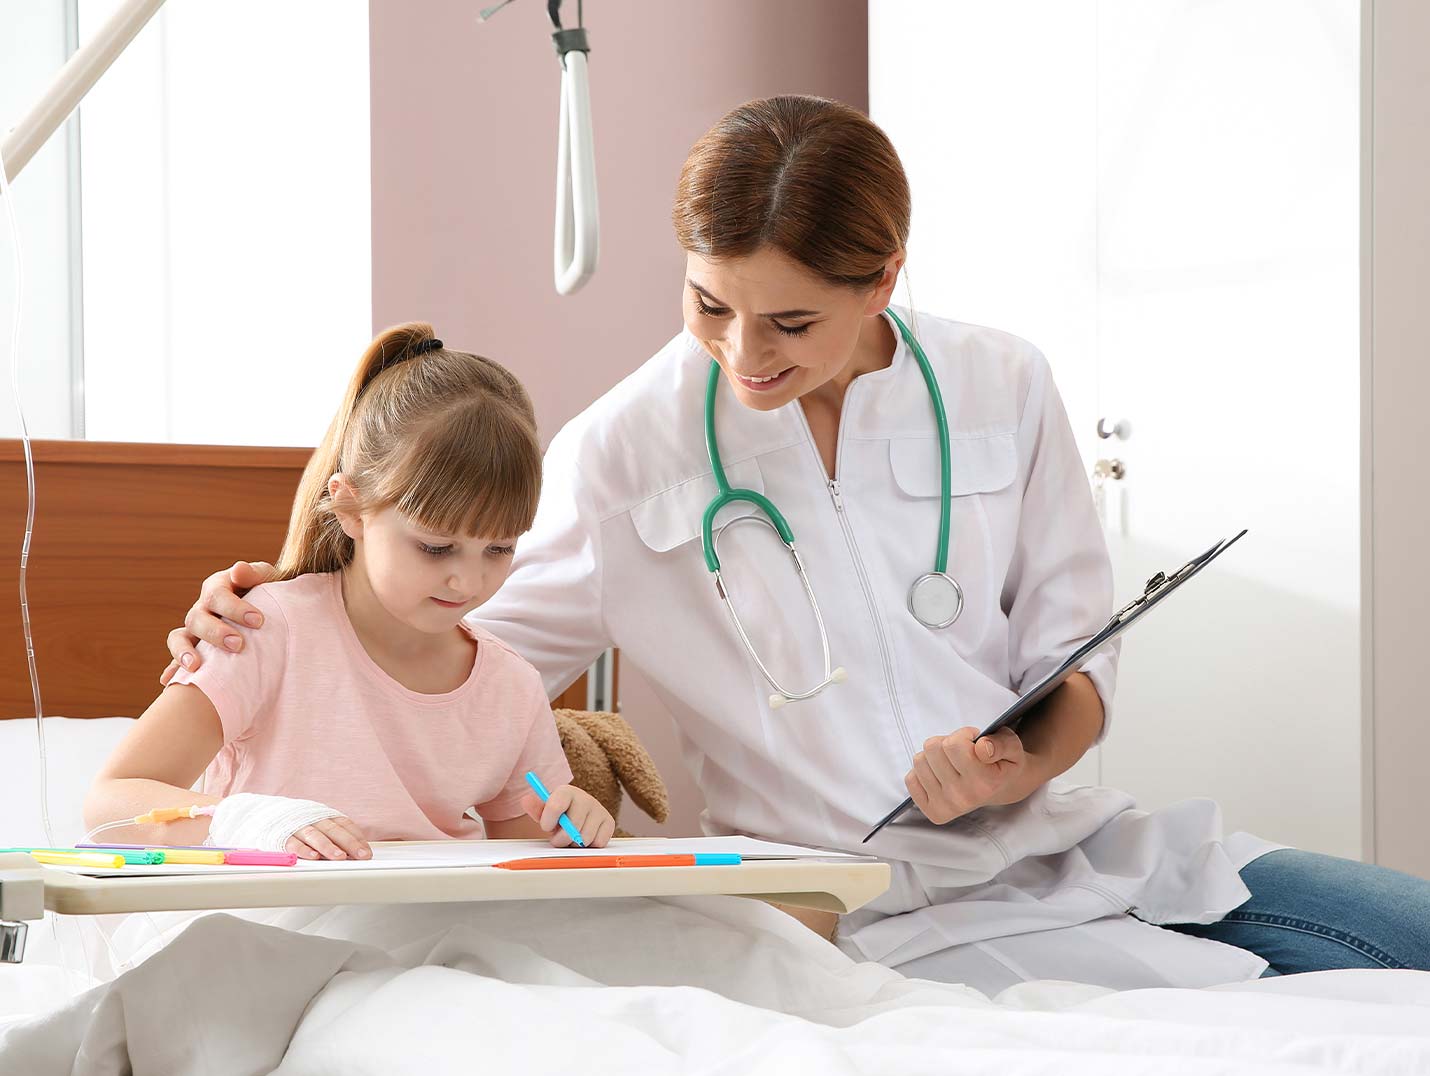 Niña sentada en una cama hospitalaria coloreando, mientras una doctora con bata blanca está a su lado tocando su hombro